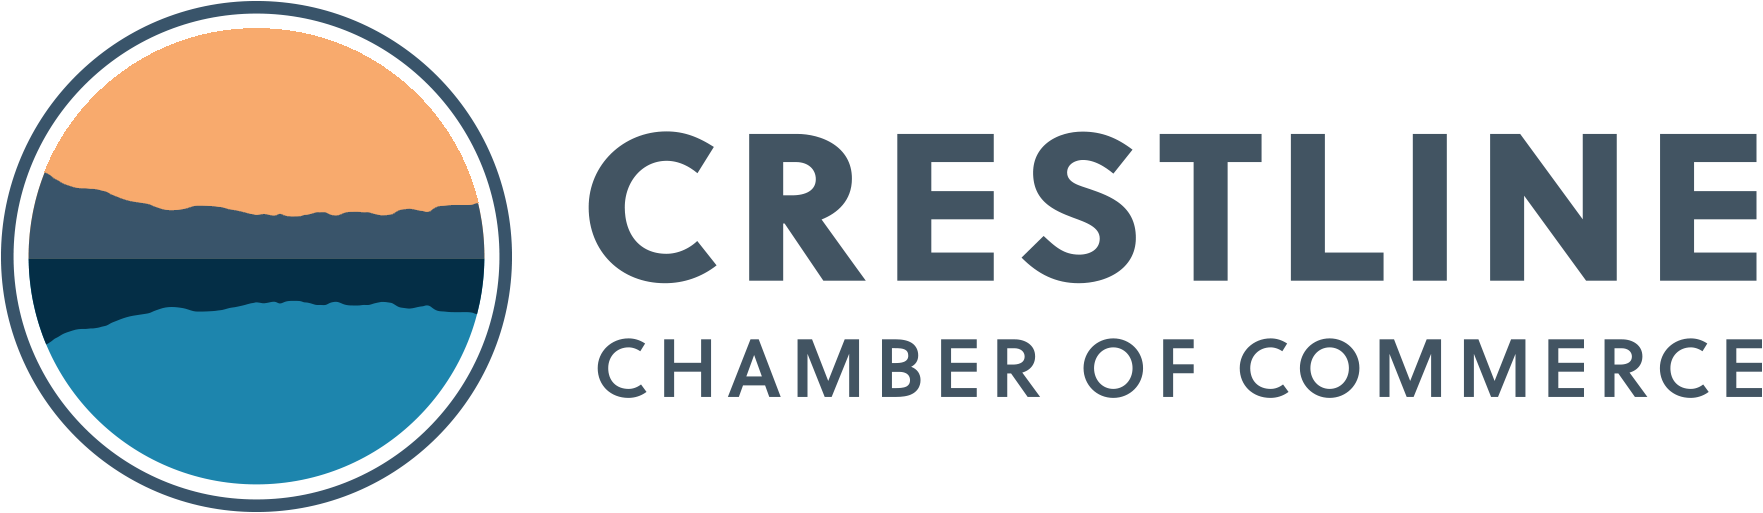 Crestline Chamber of Commerce